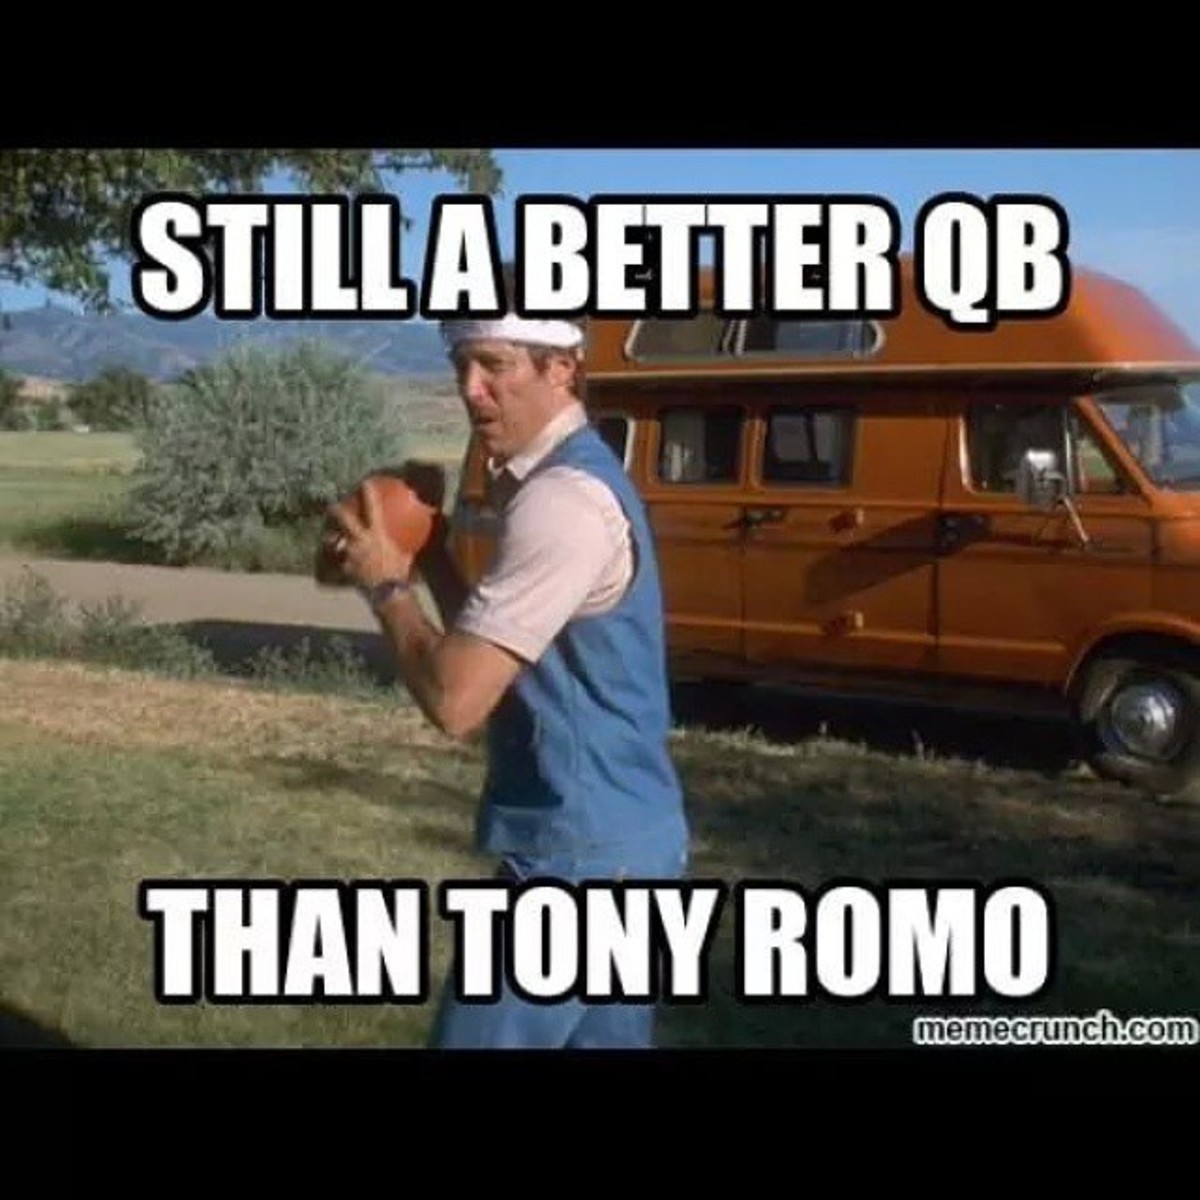 Funny Tony Romo meme